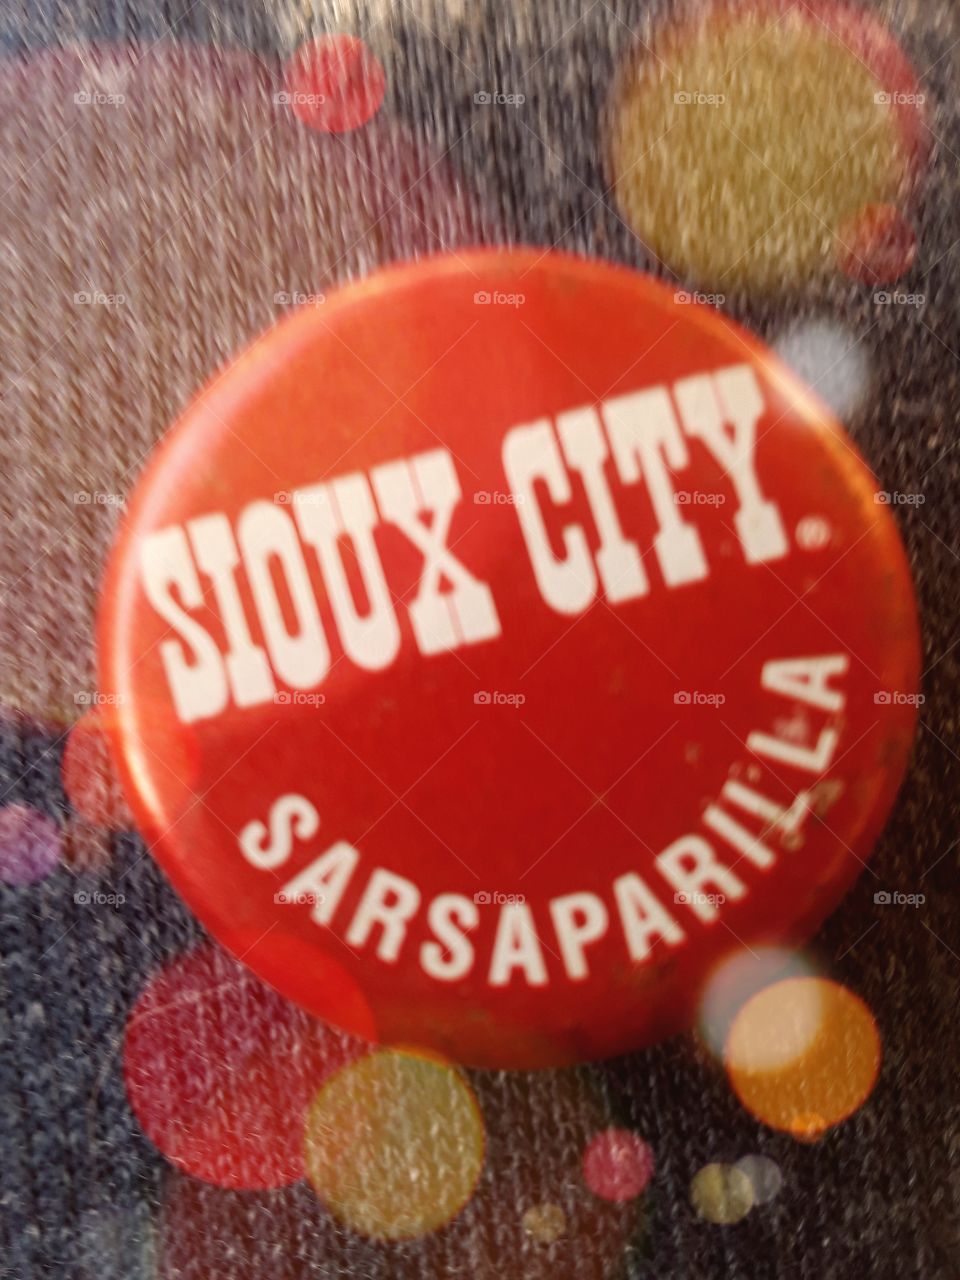 Sioux city cap